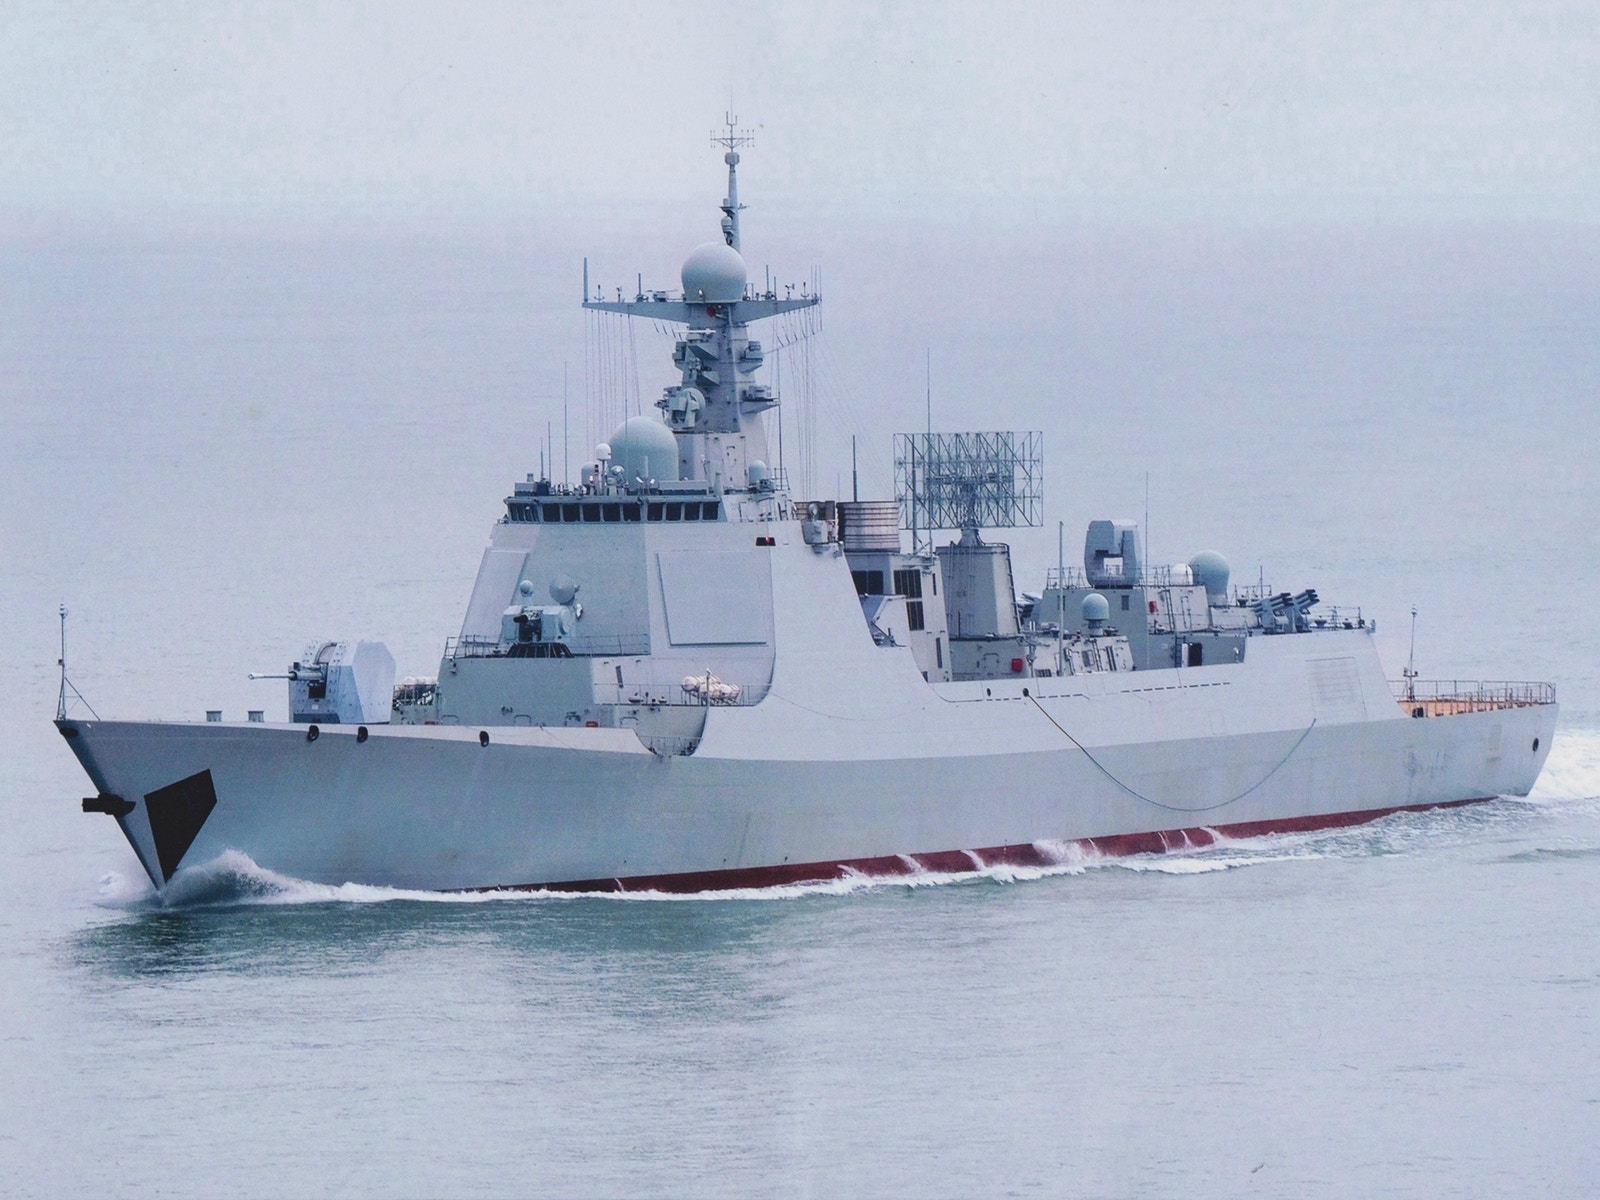 中国海军两艘驱逐舰同时下水美被曝削减军舰数量 图 战争风云 Enewstree Com Powered By Discuz